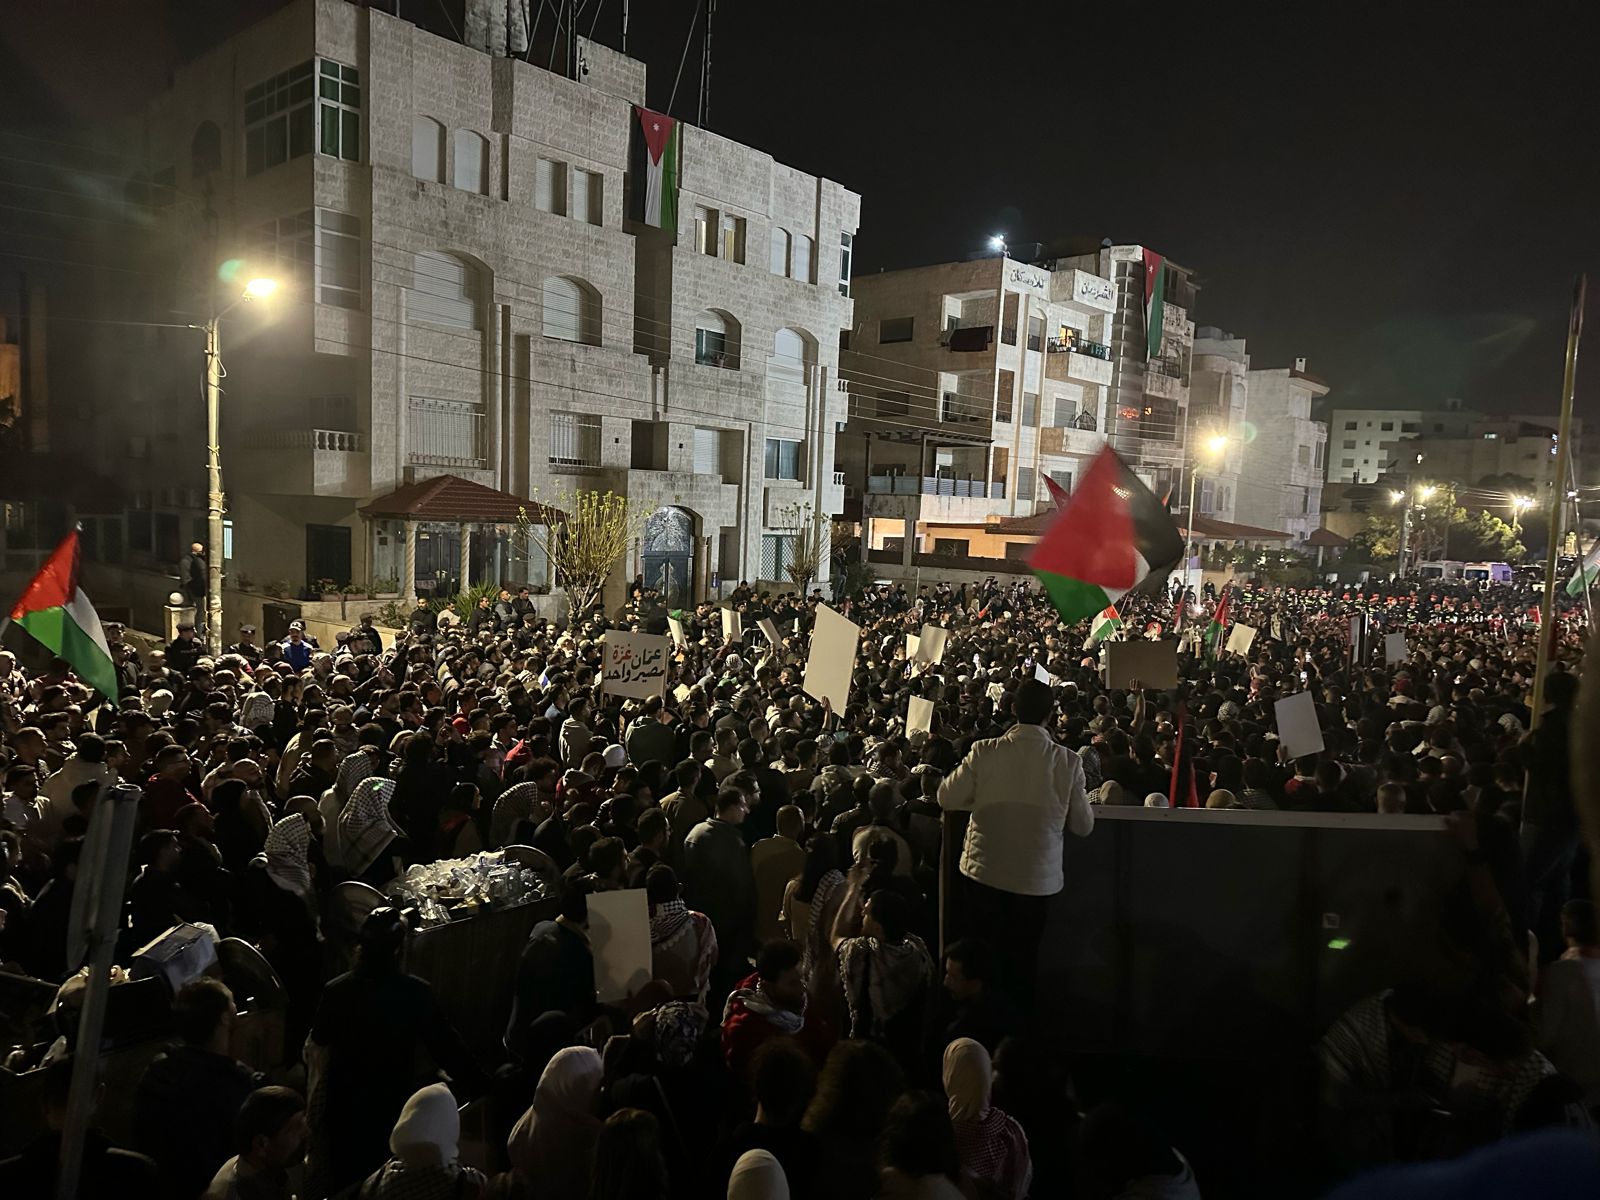 اكثر من (10) آلاف اردني يشاركون في حصار السفارة الصهيونية